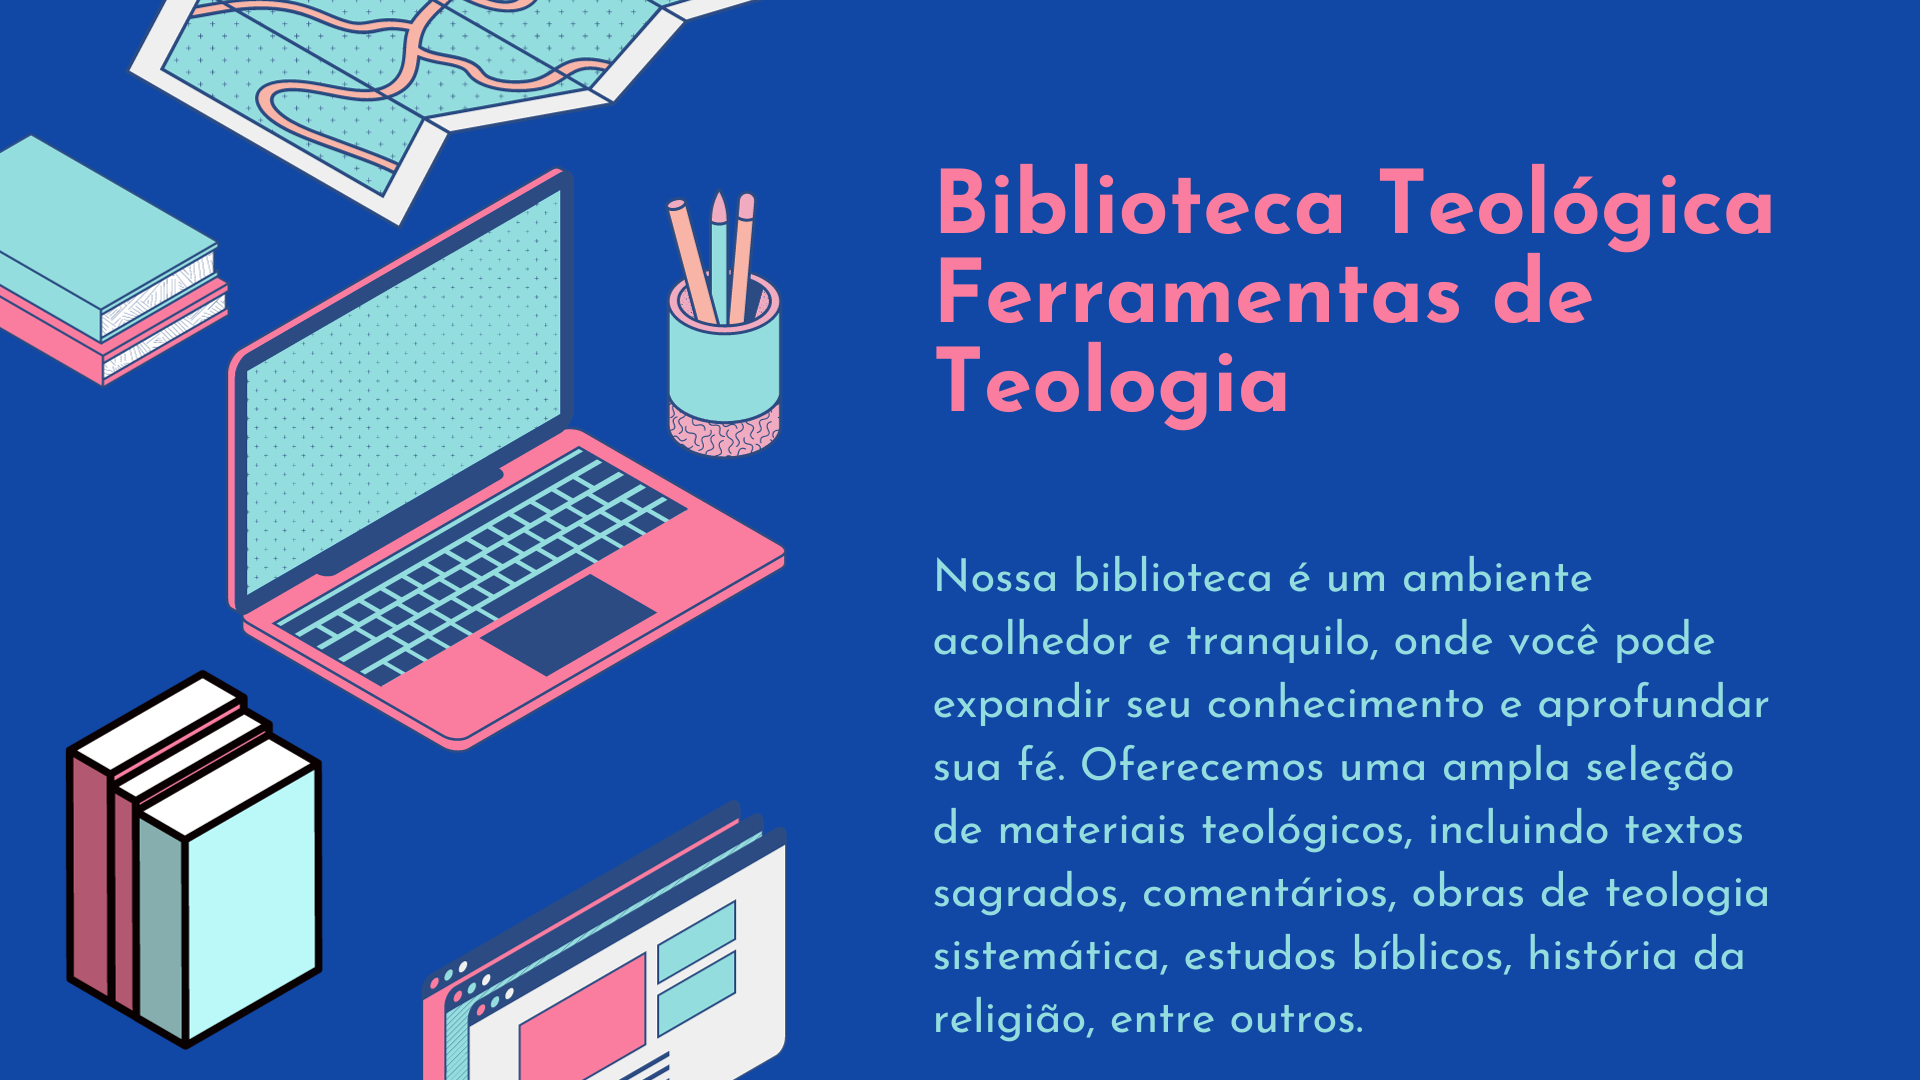 Biblioteca Teologica Ferramentas de Teologia - Biblioteca Teológica